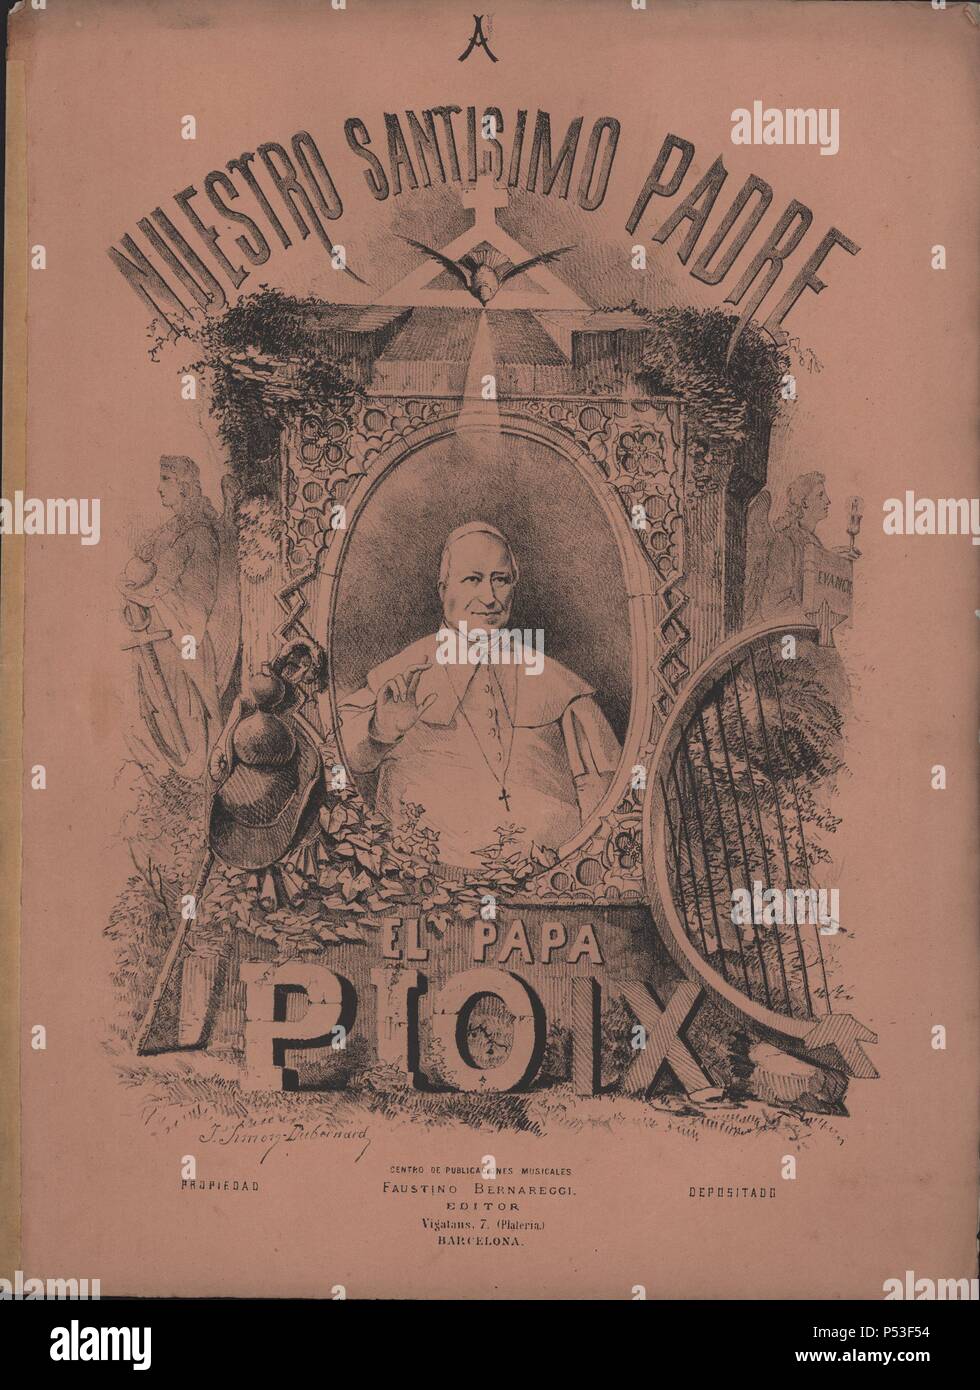 Partitura musical del himno 'A nuestro Santísimo Padre el Papa Pio IX', música de Cándido Candi (1844-1911). Barcelona, año 1881. Stock Photo